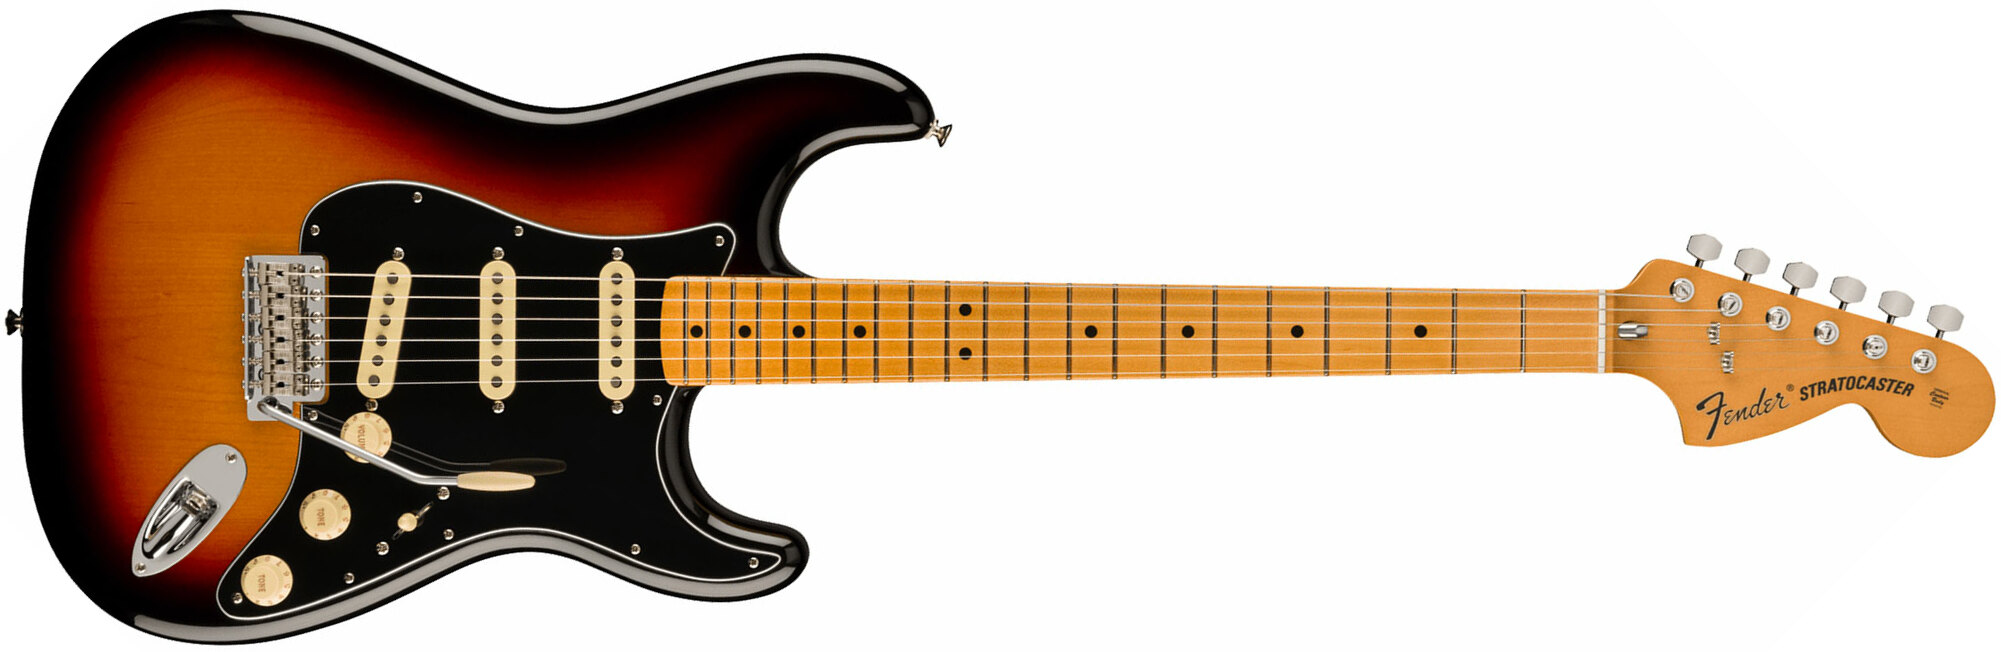 Fender Strat 70s Vintera 2 Mex 3s Trem Mn - 3-color Sunburst - Elektrische gitaar in Str-vorm - Main picture